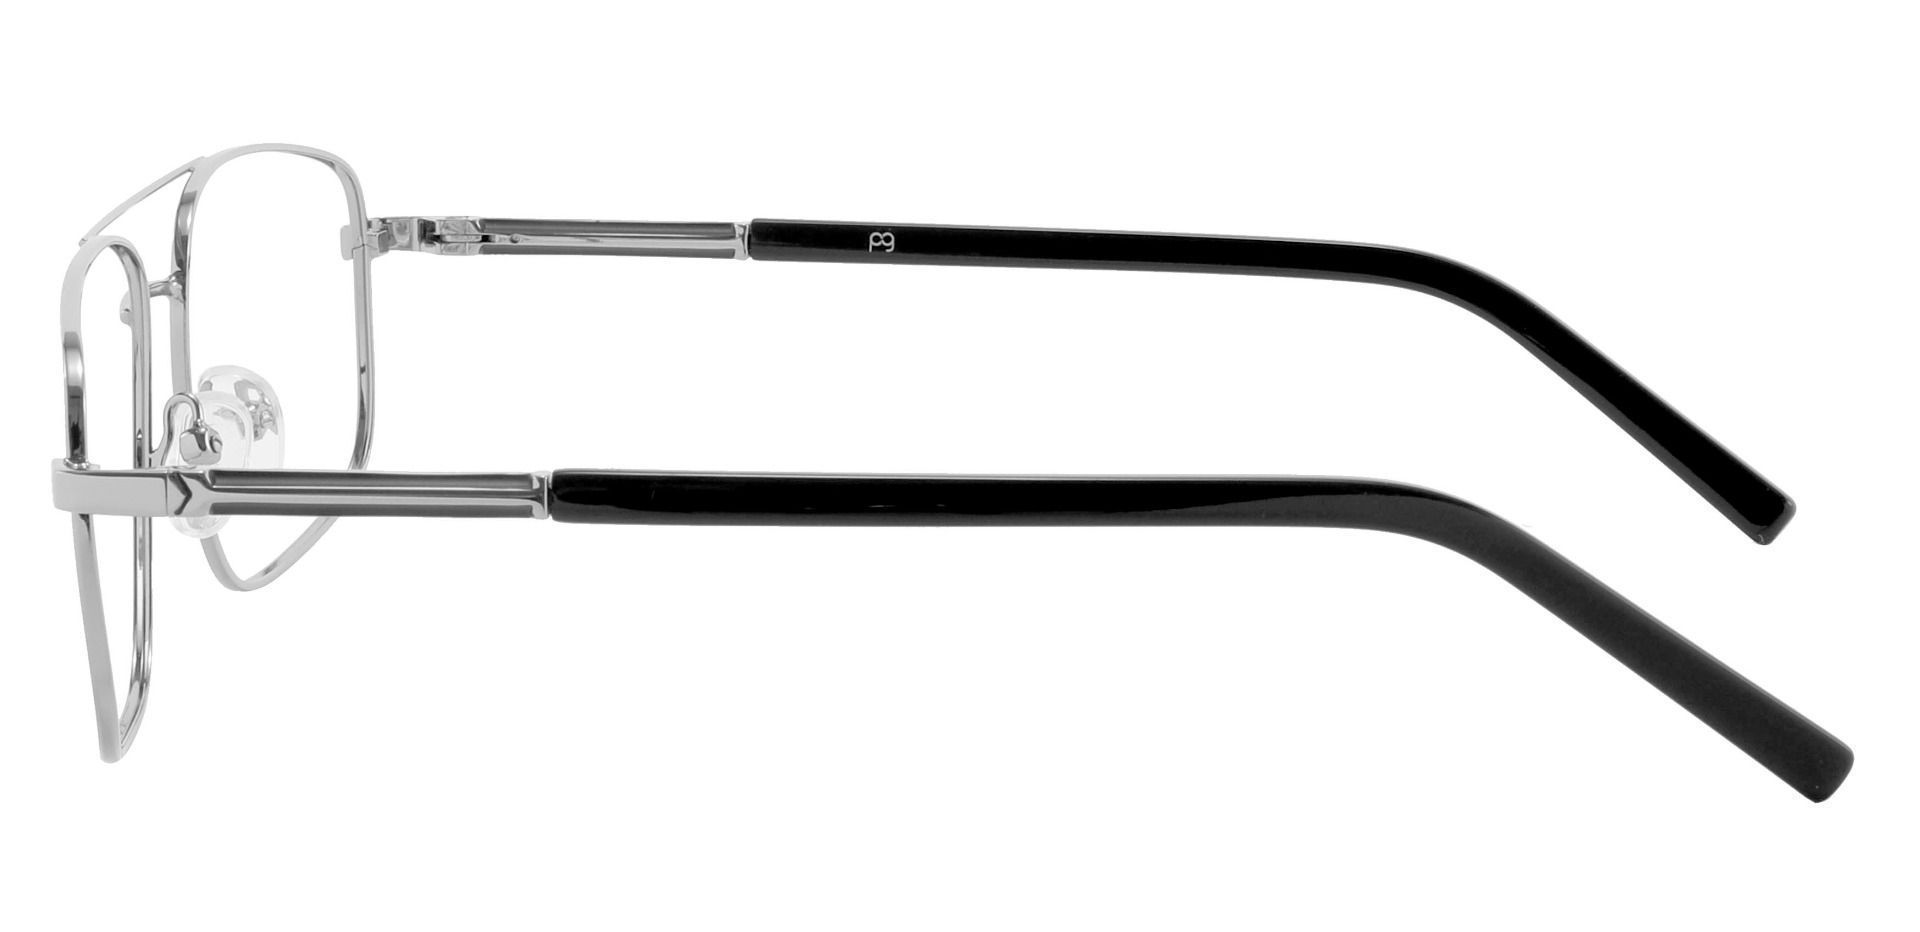 Davenport Aviator Non-Rx Glasses - Silver